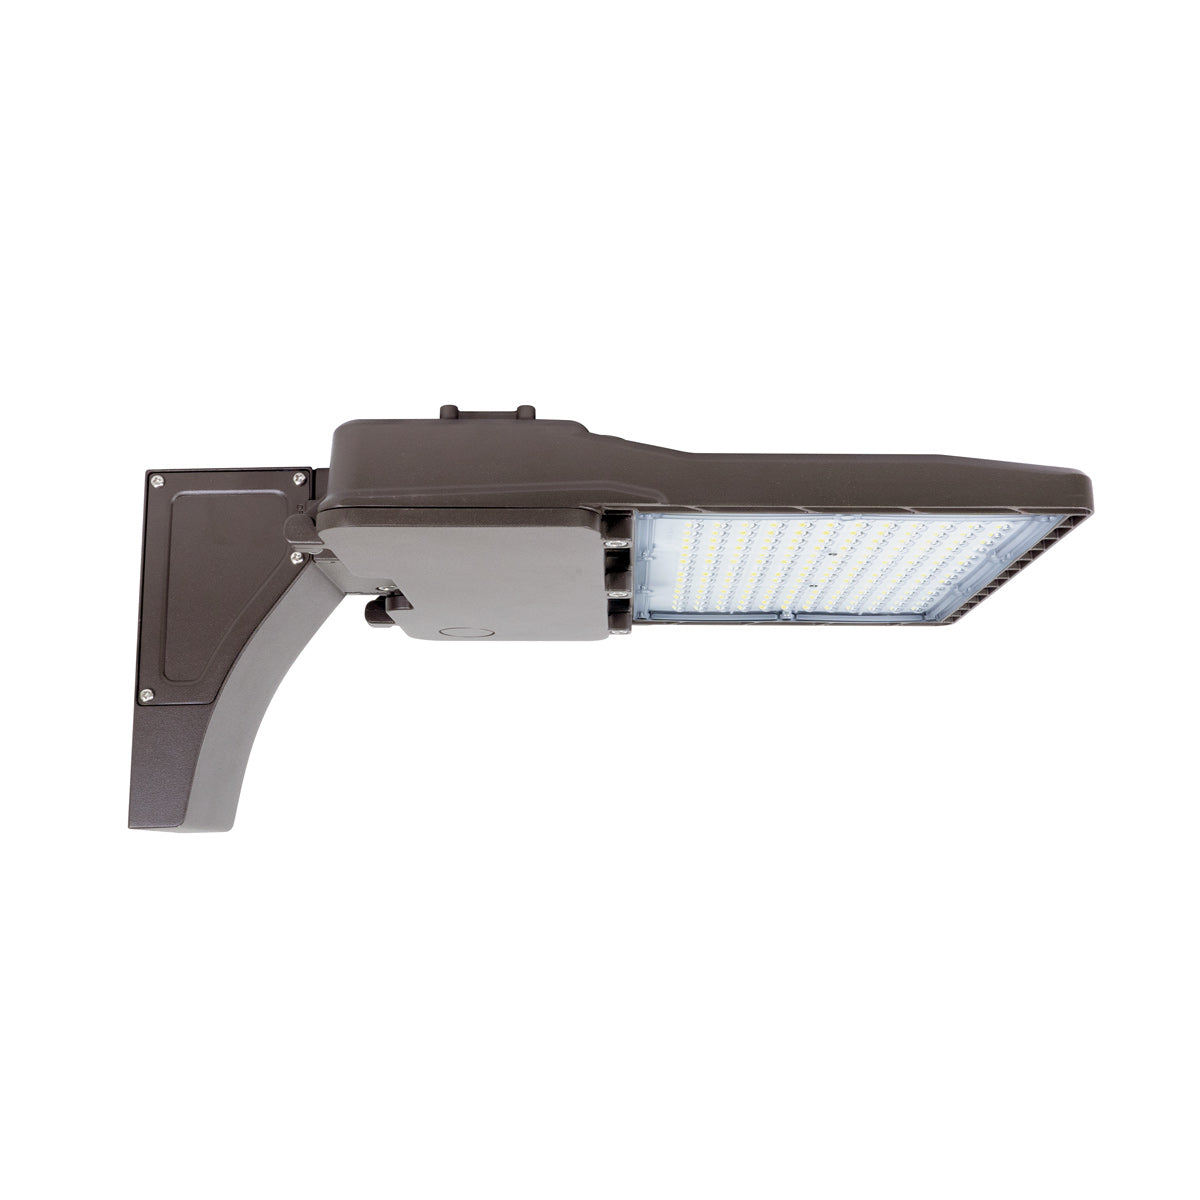 LED Shoebox Area Light - 150W / 21,000 lumens